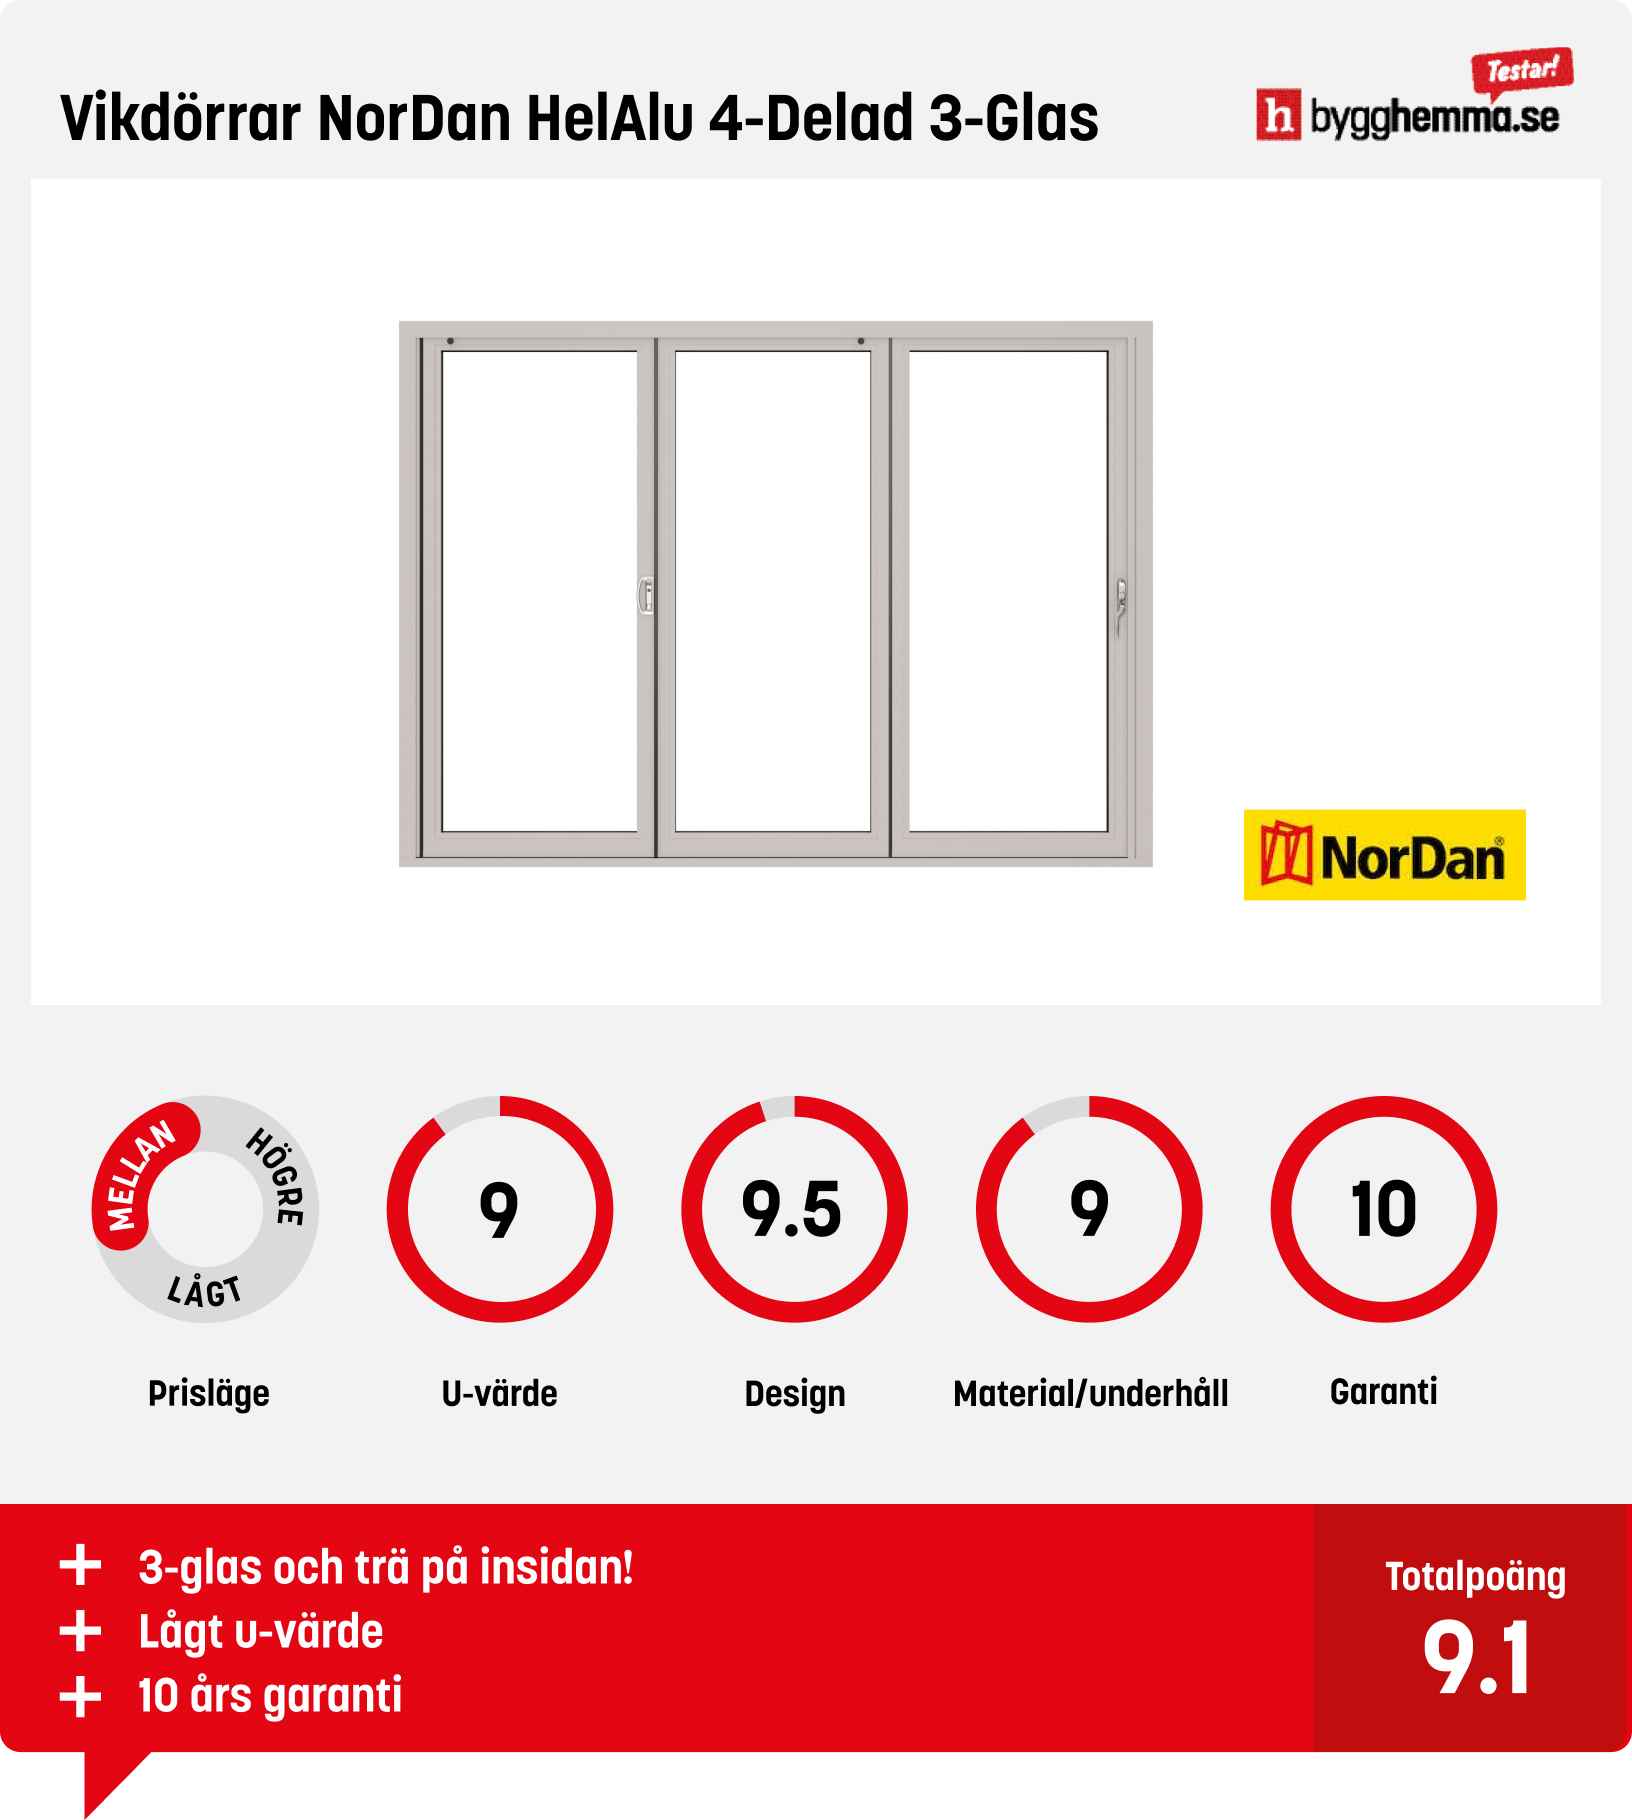 Vikdörr bäst i test - Vikdörrar NorDan HelAlu 4-Delad 3-Glas